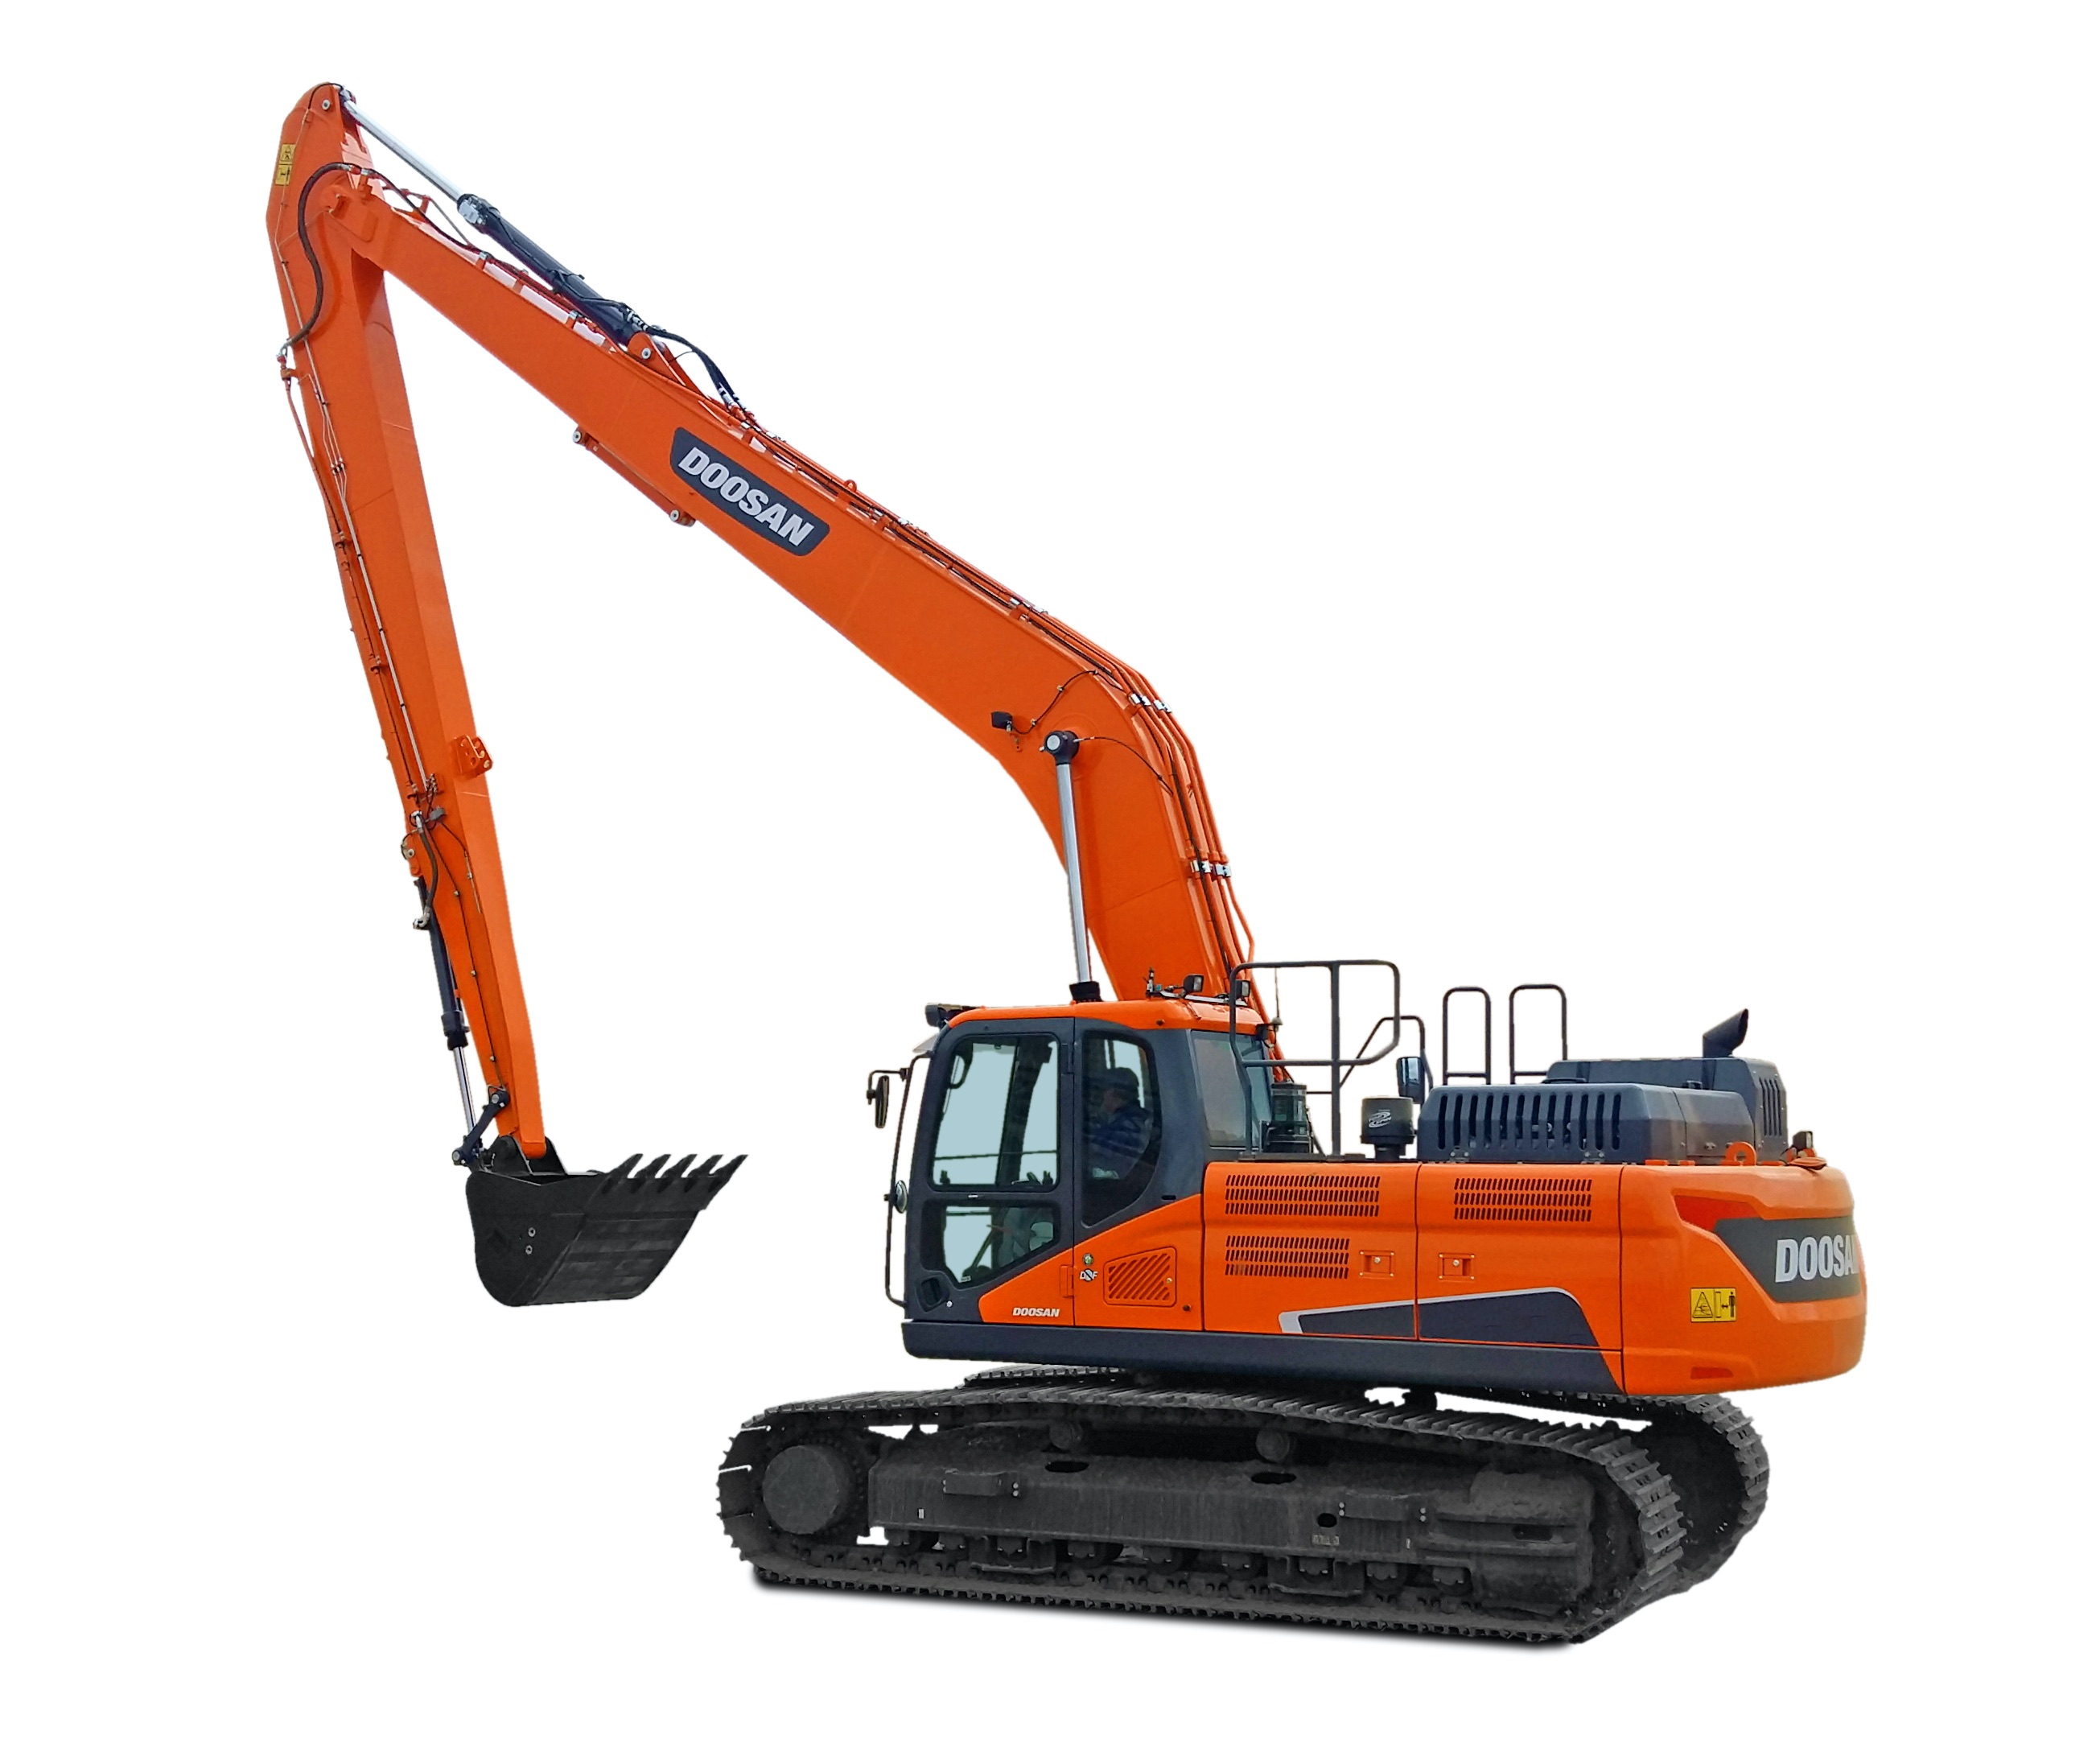 Doosan DX225 Long Reach Excavator